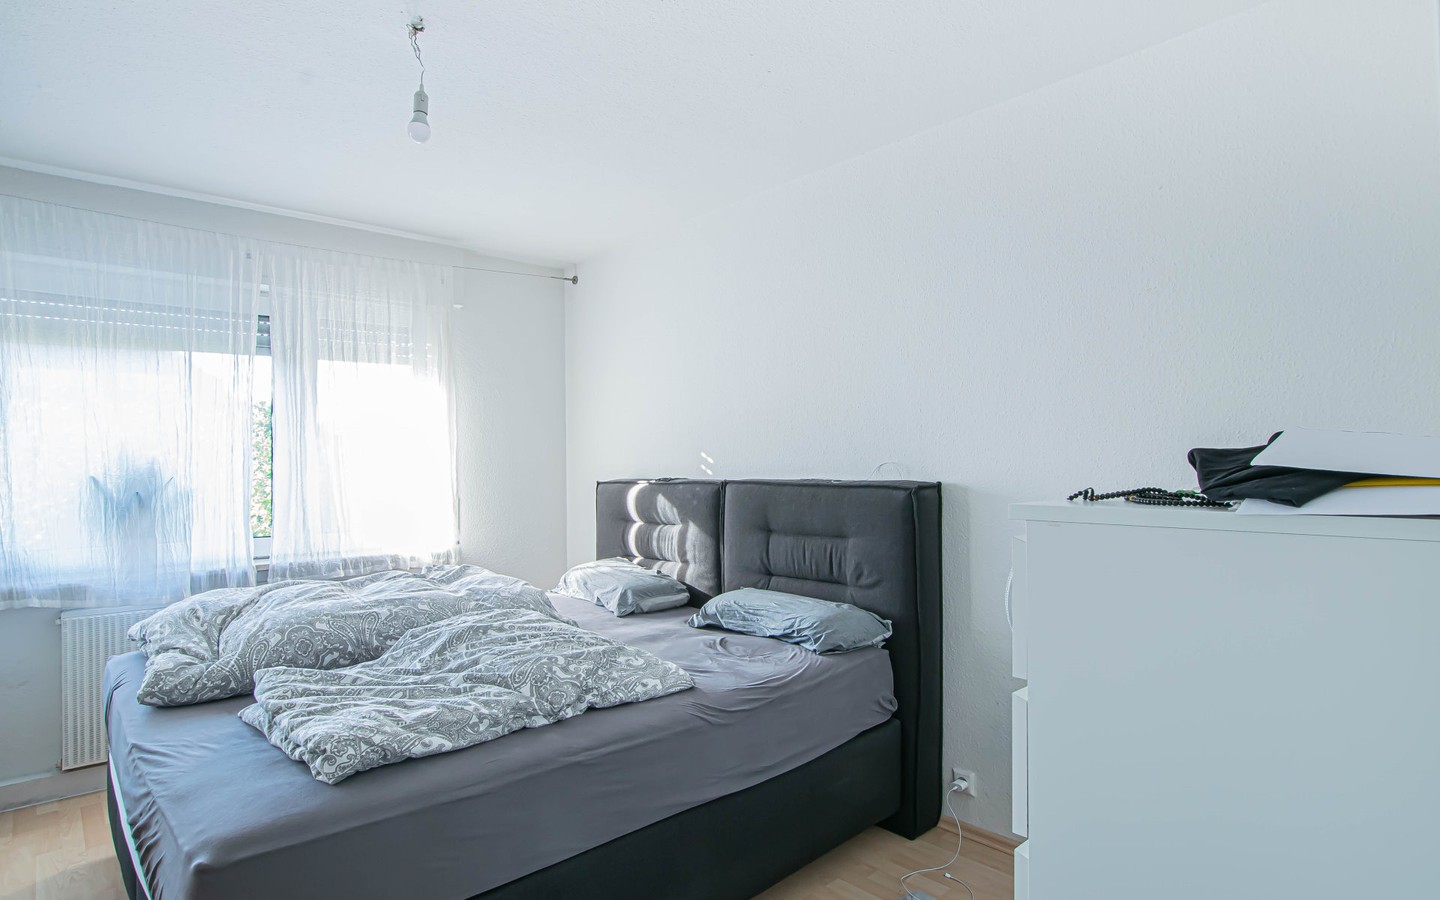 2. OG 2 Zi. rechts - Schlafzimmer - Wohn- und Geschäftshaus mit Entwicklungspotential in Mannheim Innenstadtlage (F2, 9 und 9A)